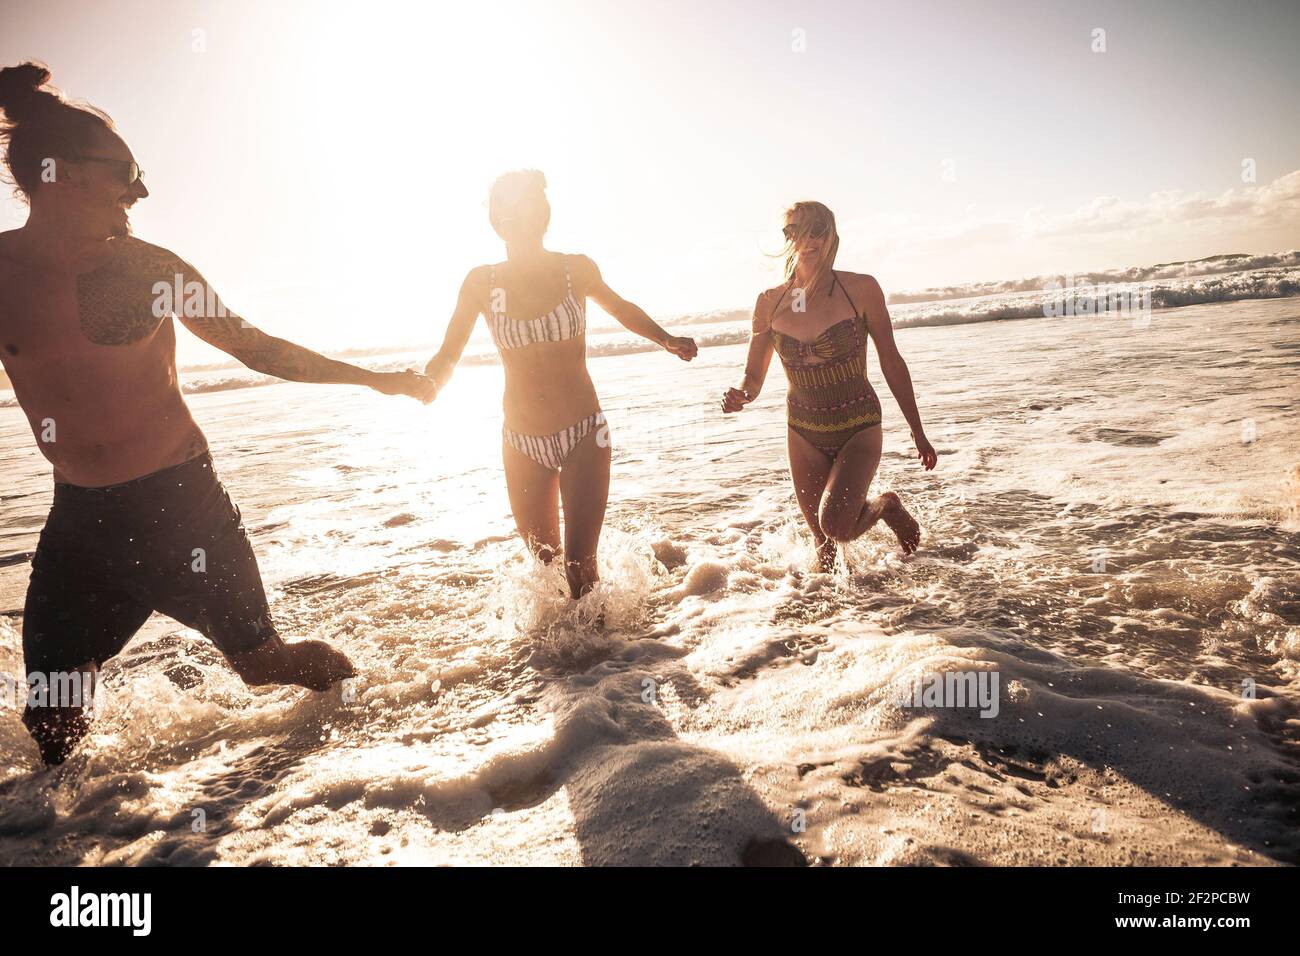 Drei junge Menschen genießen Sommerferien in Freundschaftsspielen Mit Meereswellen am Strand - Konzept des Touristen Freunde genießen die Meer Freizeitaktivitäten im Freien Stockfoto